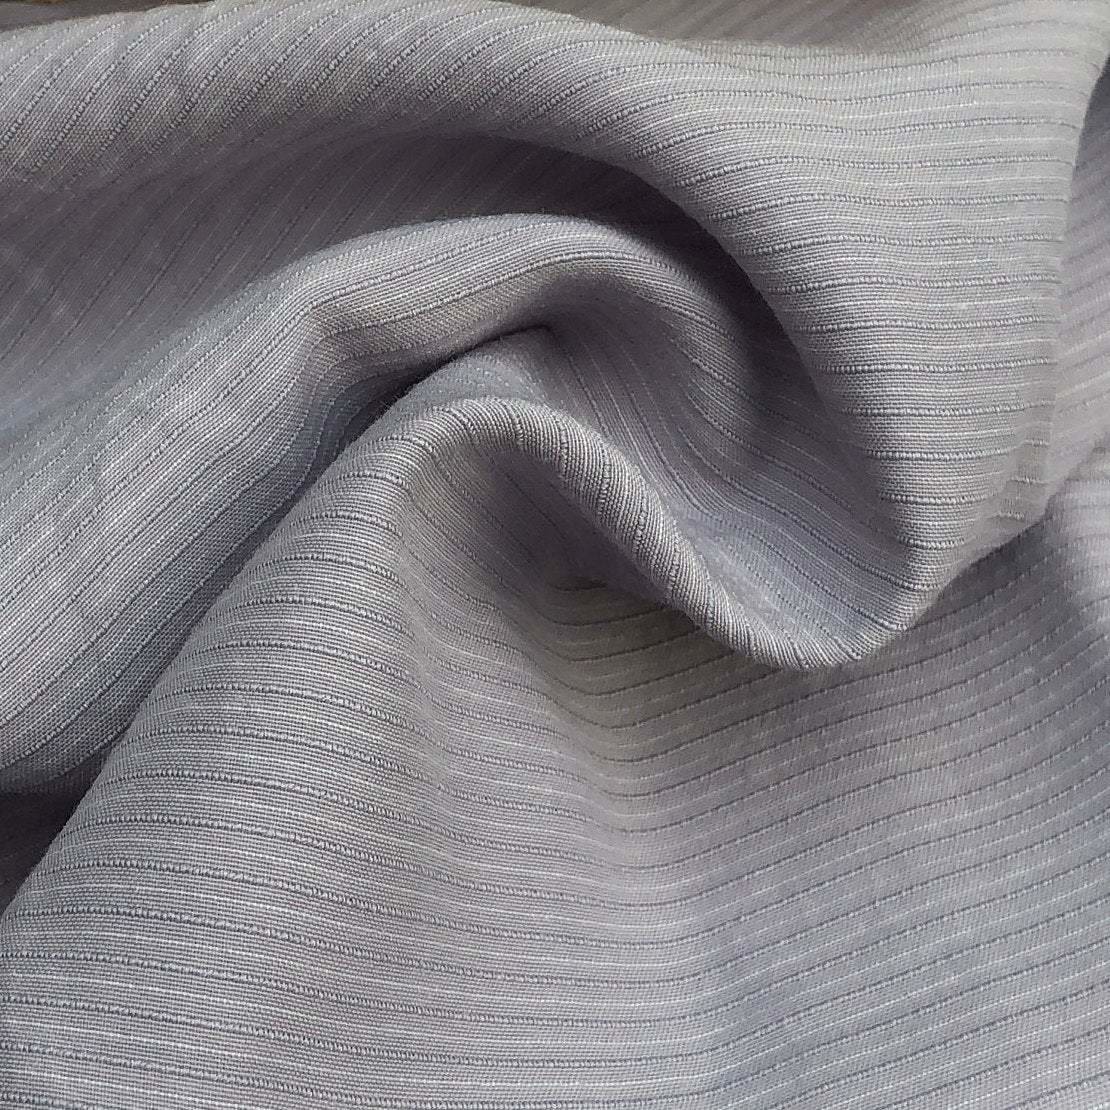 Linen Tencel Blend Fabric, Linen Tencel Blend Fabric Supplier & Manufacturer